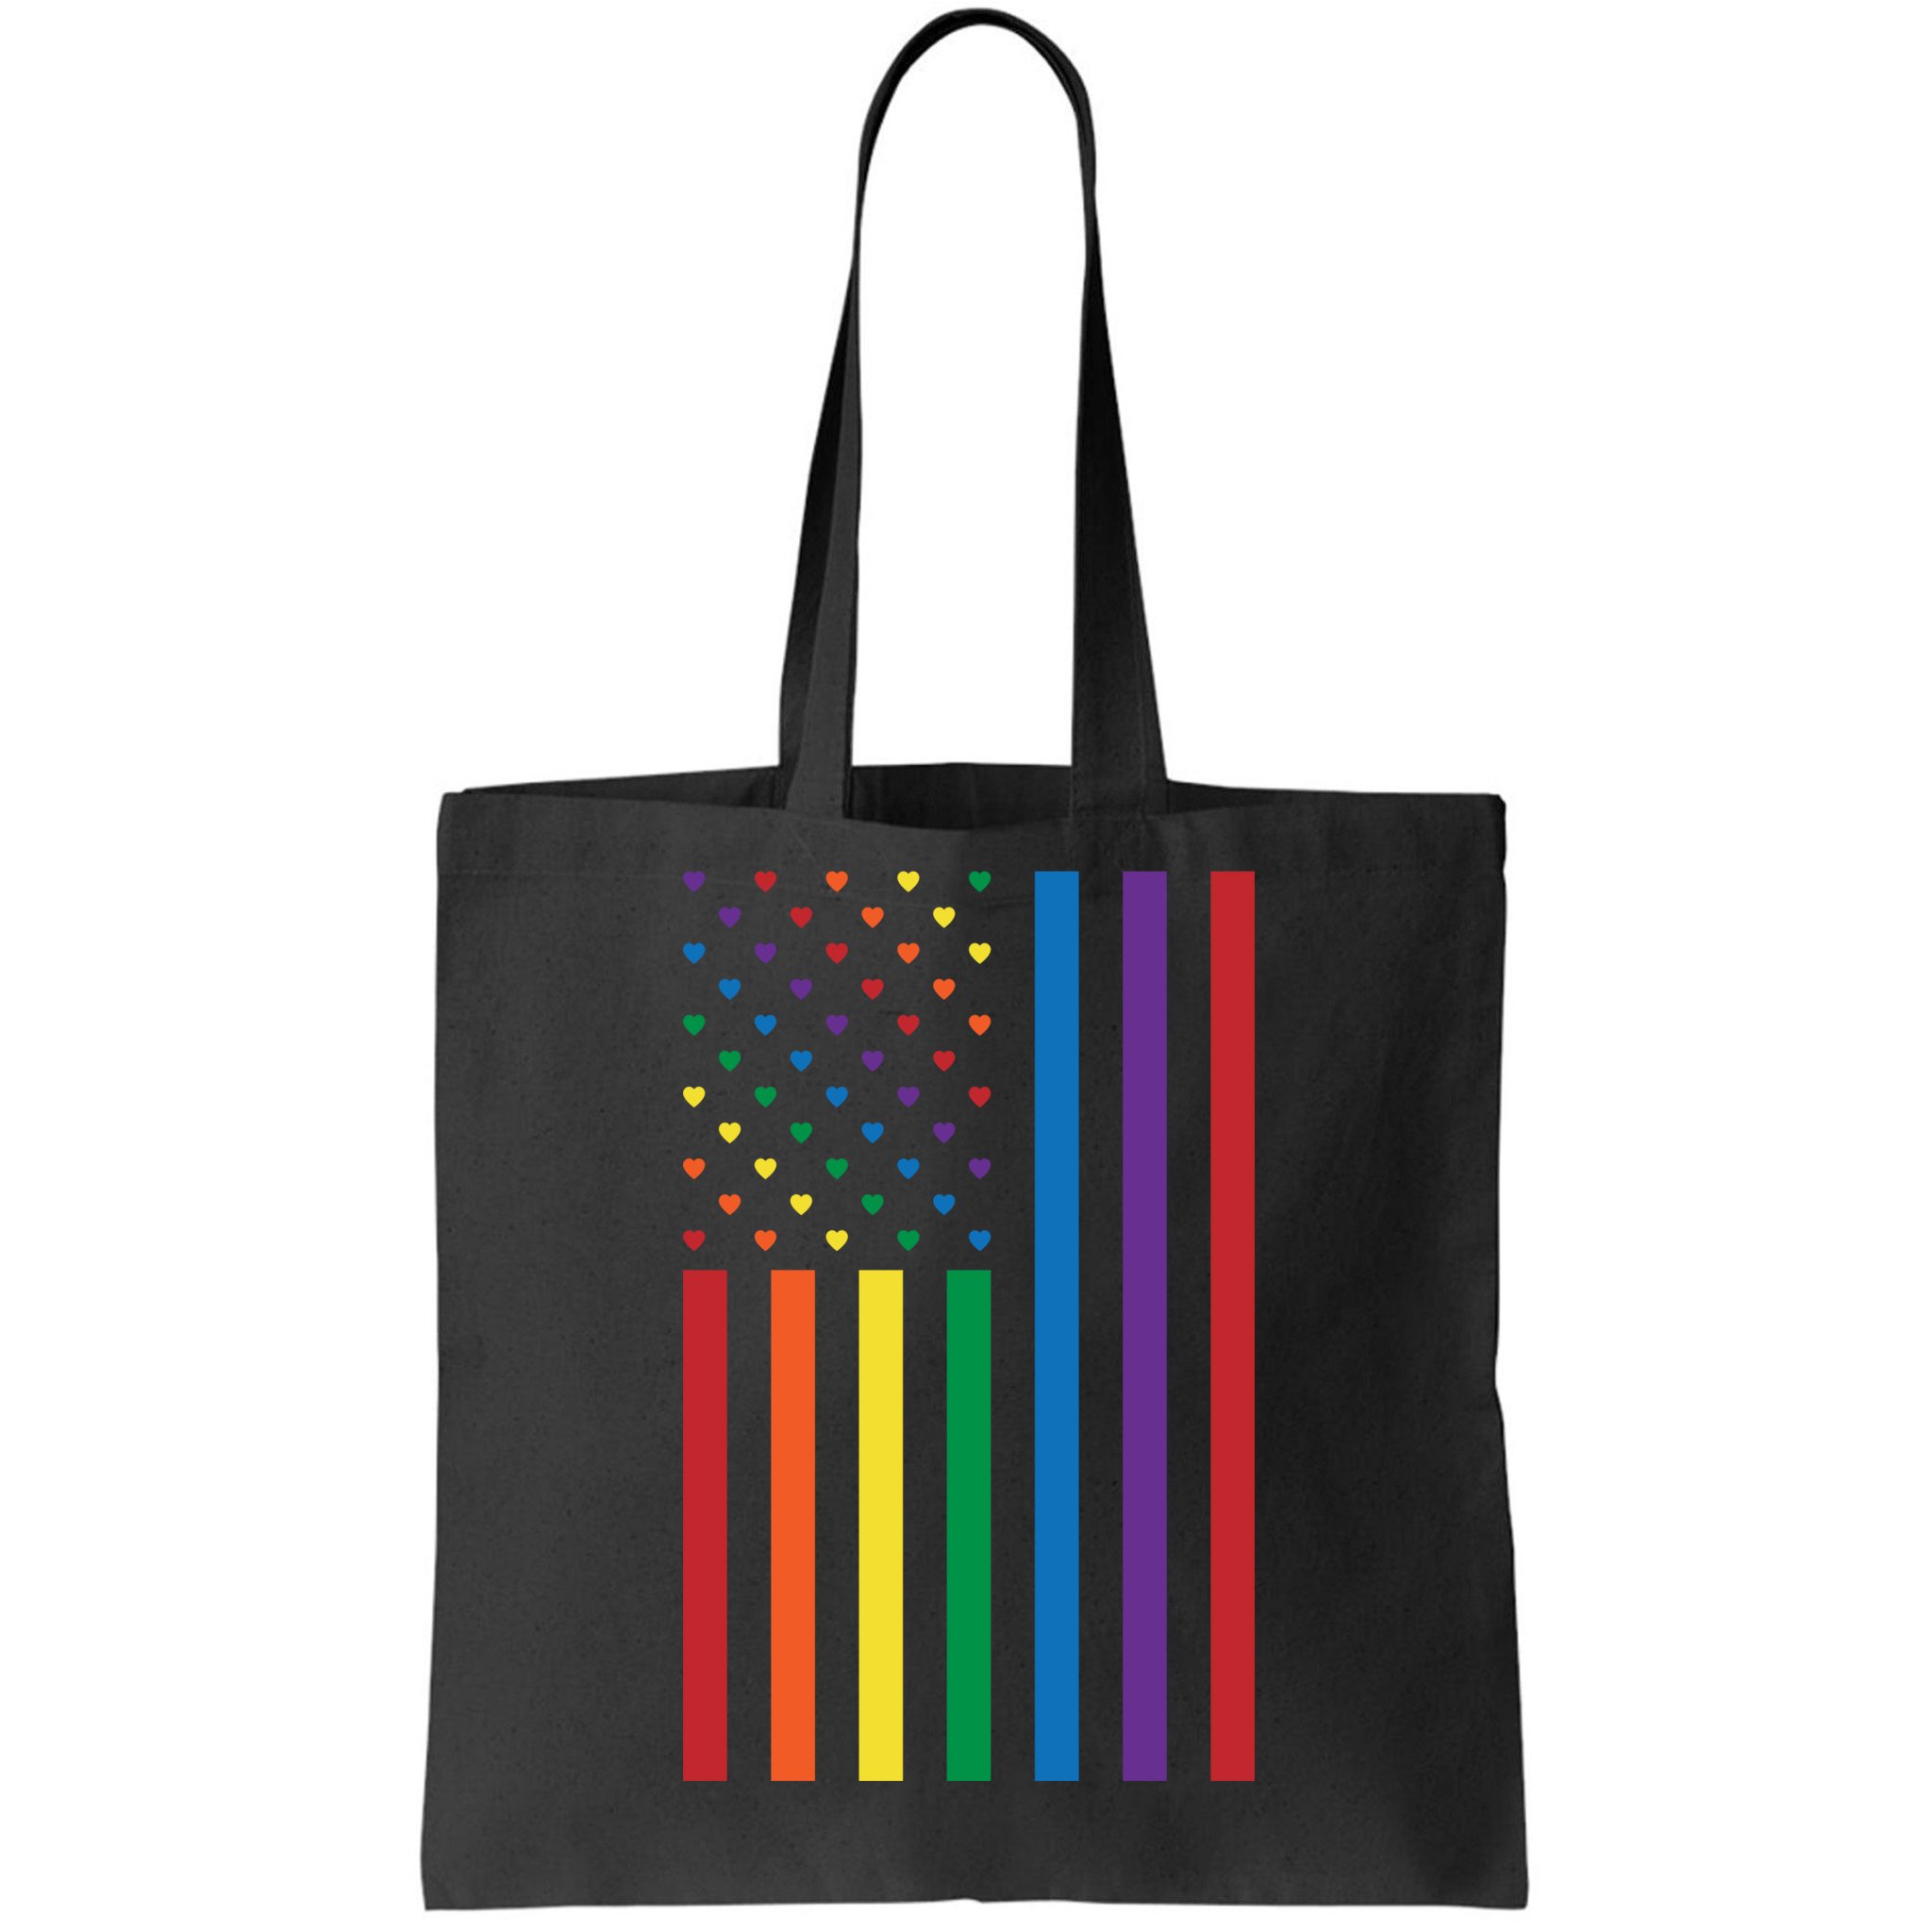 Rainbow Pride Tote Bag LGBTQ Gay Flag 100% Cotton Shopping Bag